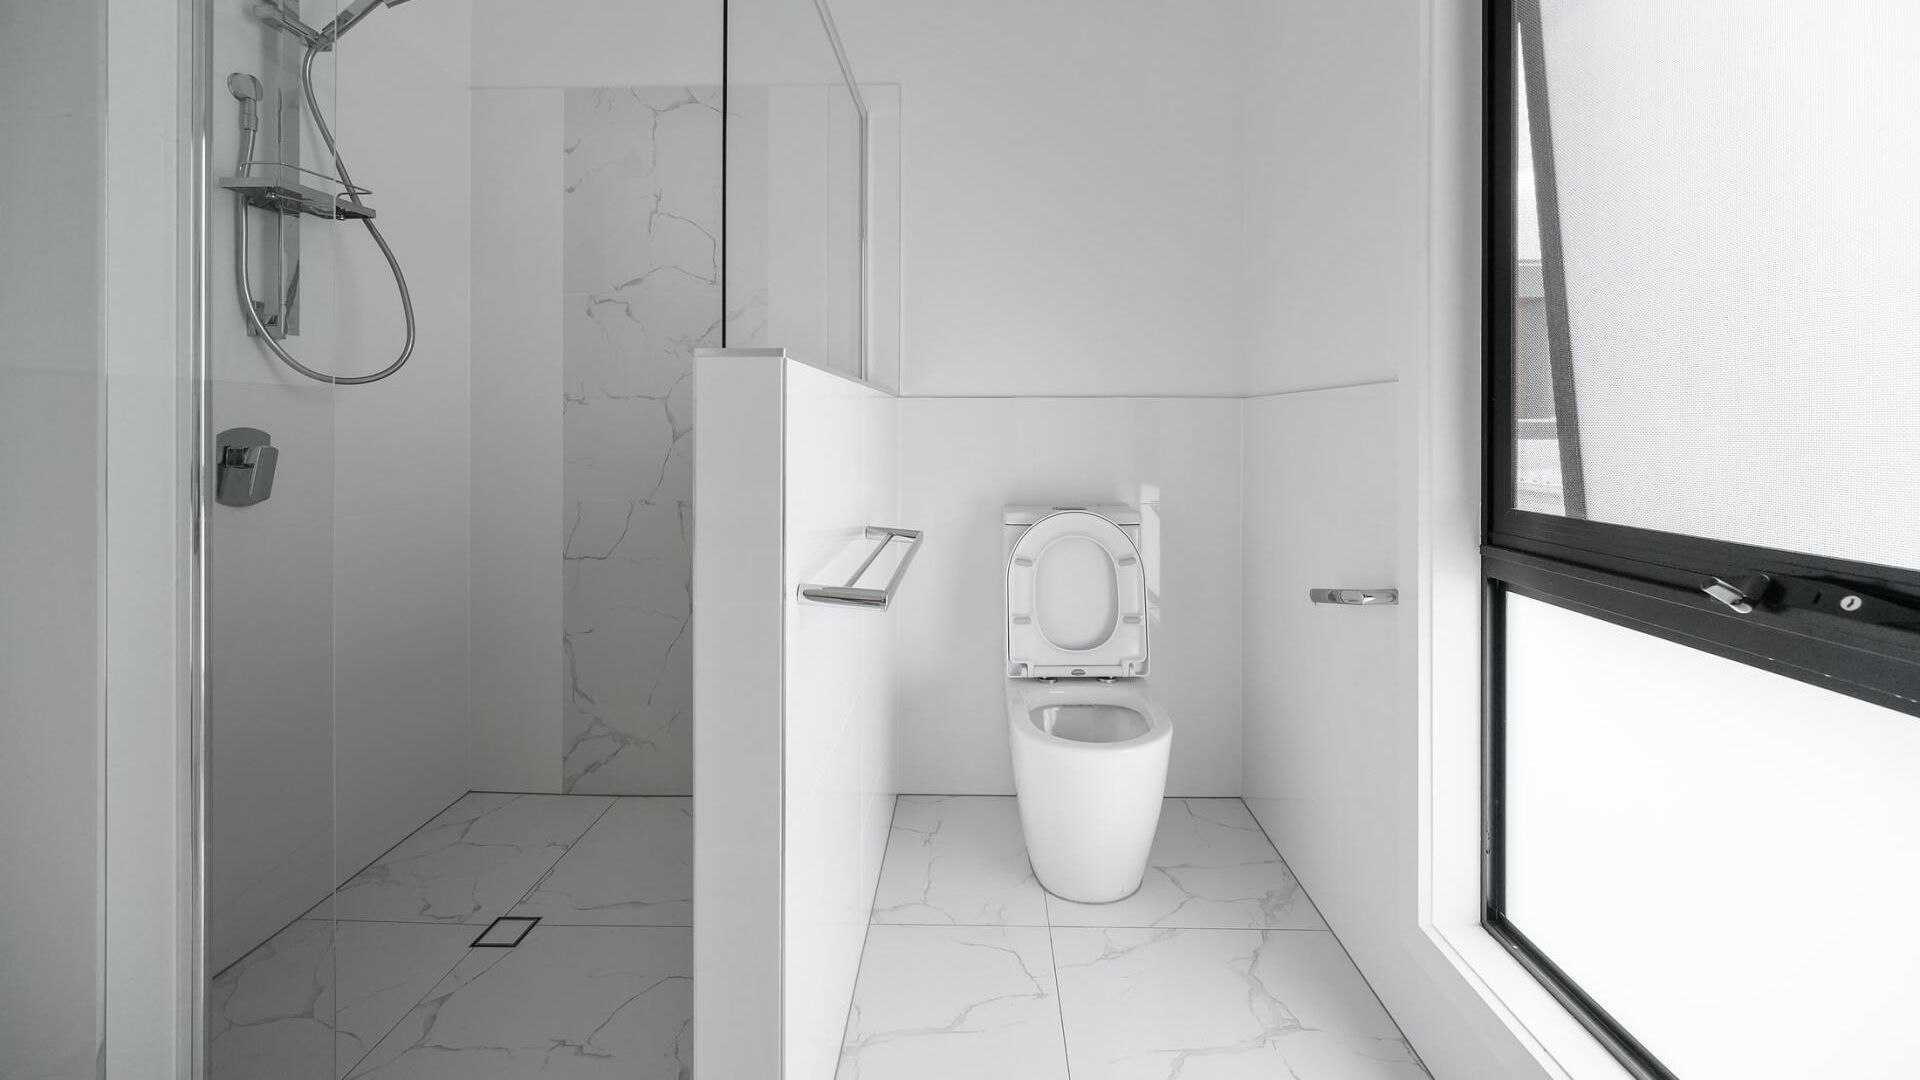 Toilet Installation